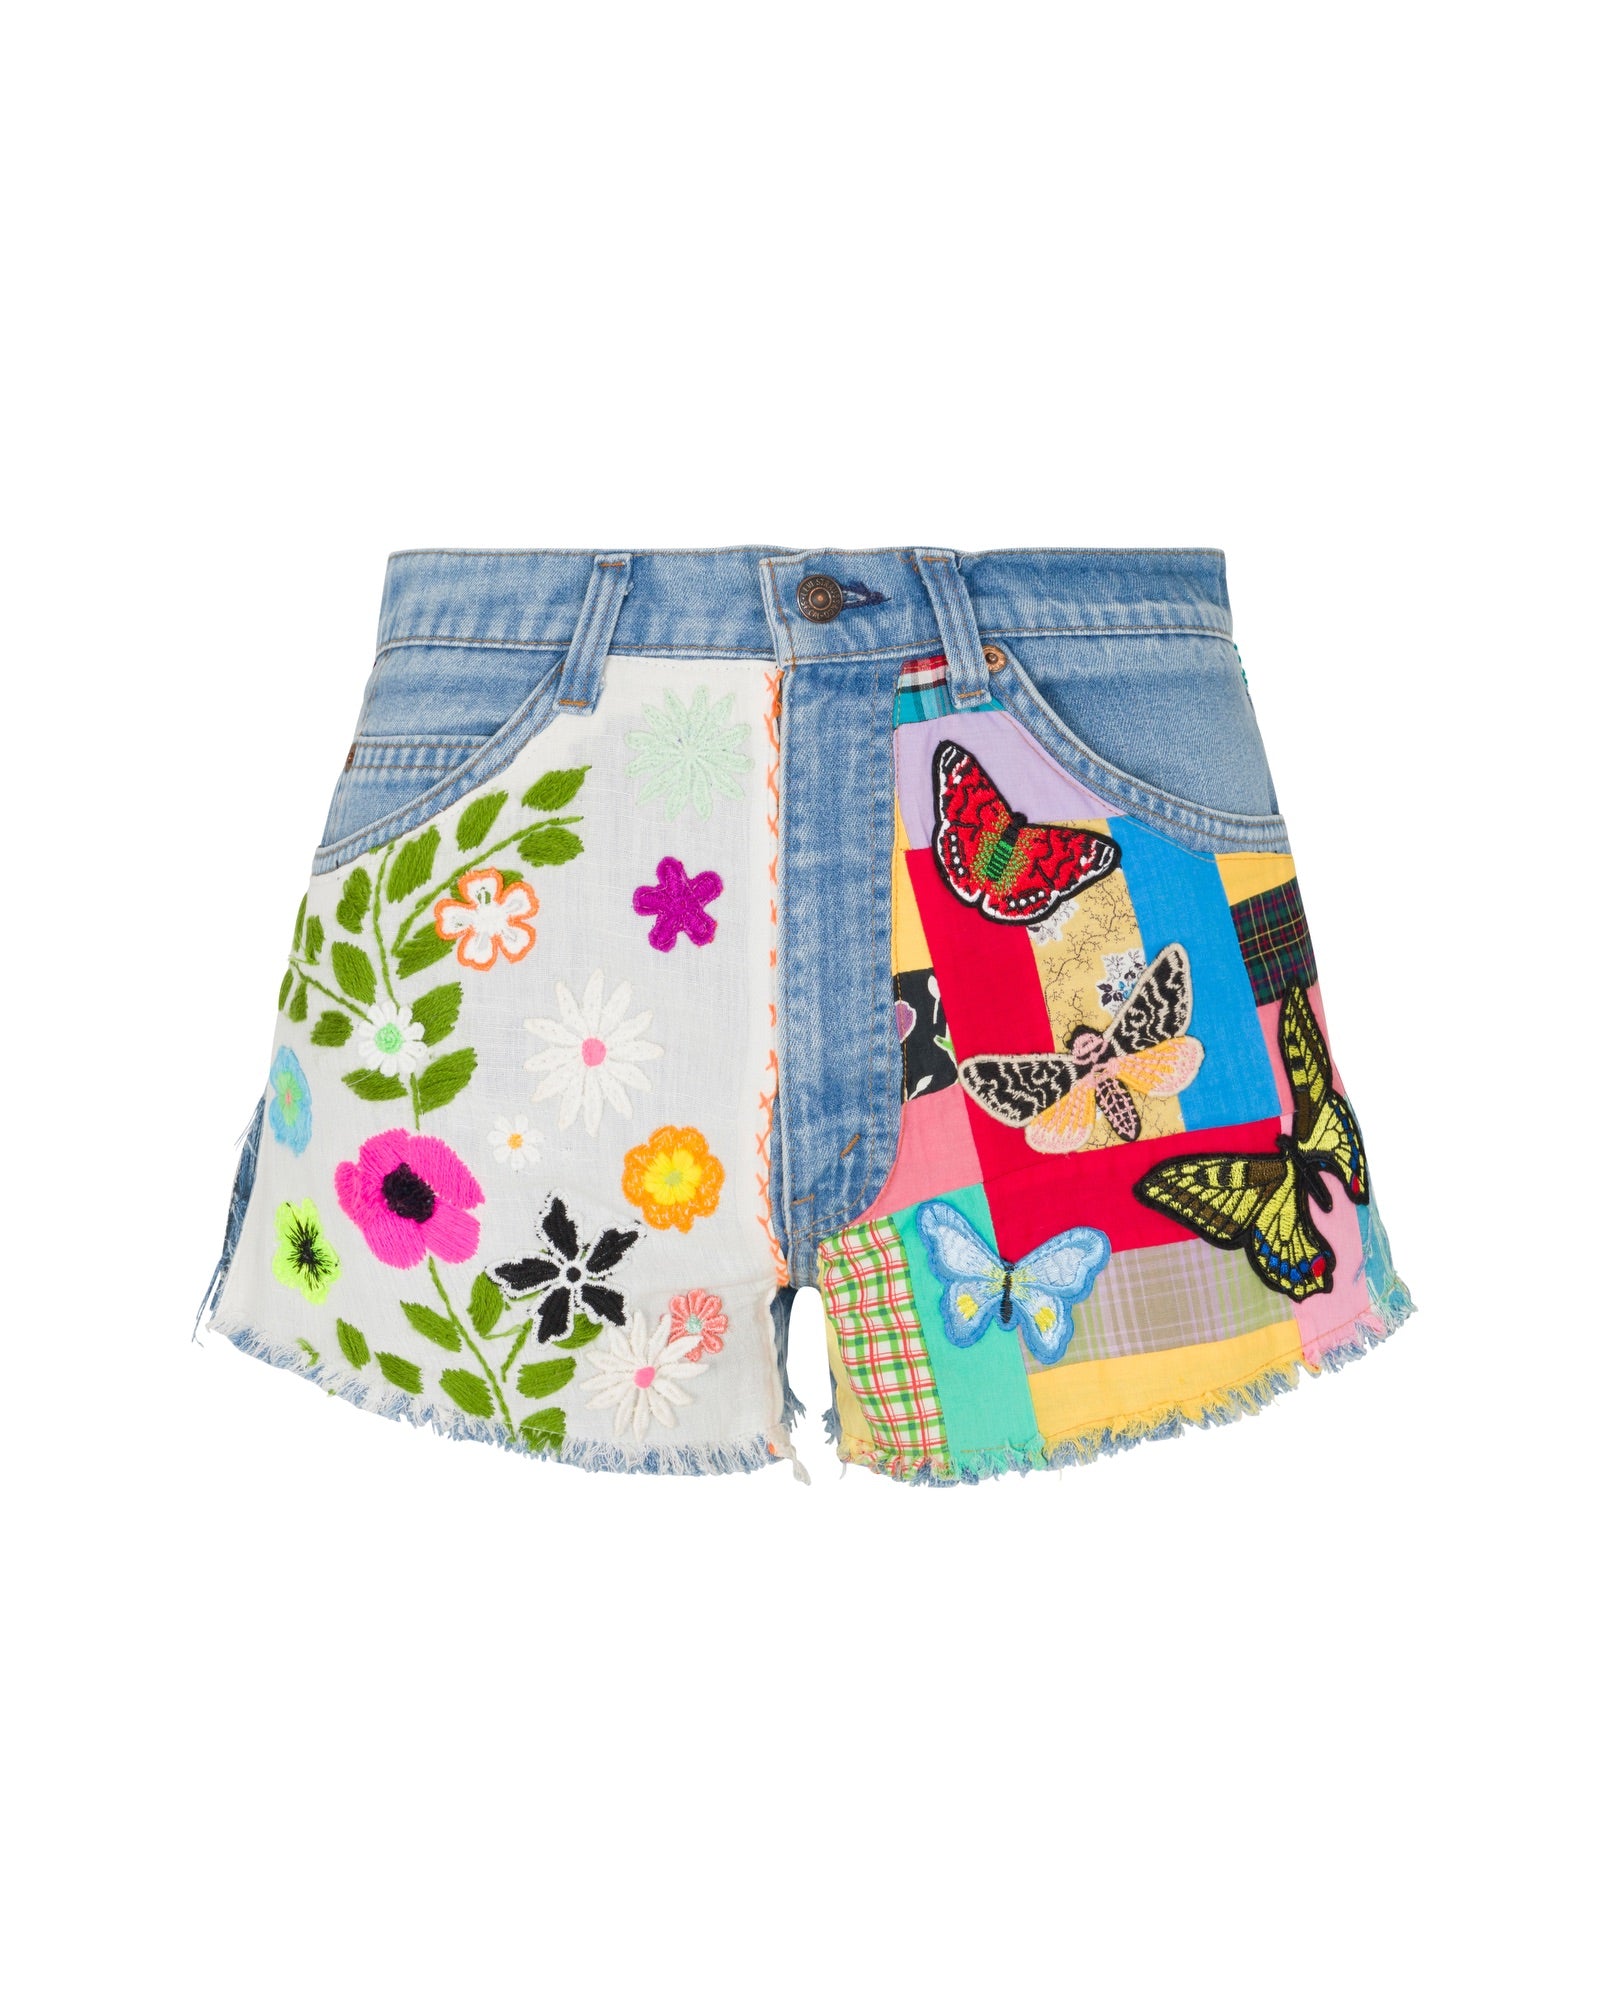 Cali Girl Denim Shorts - Butterfly Blossom